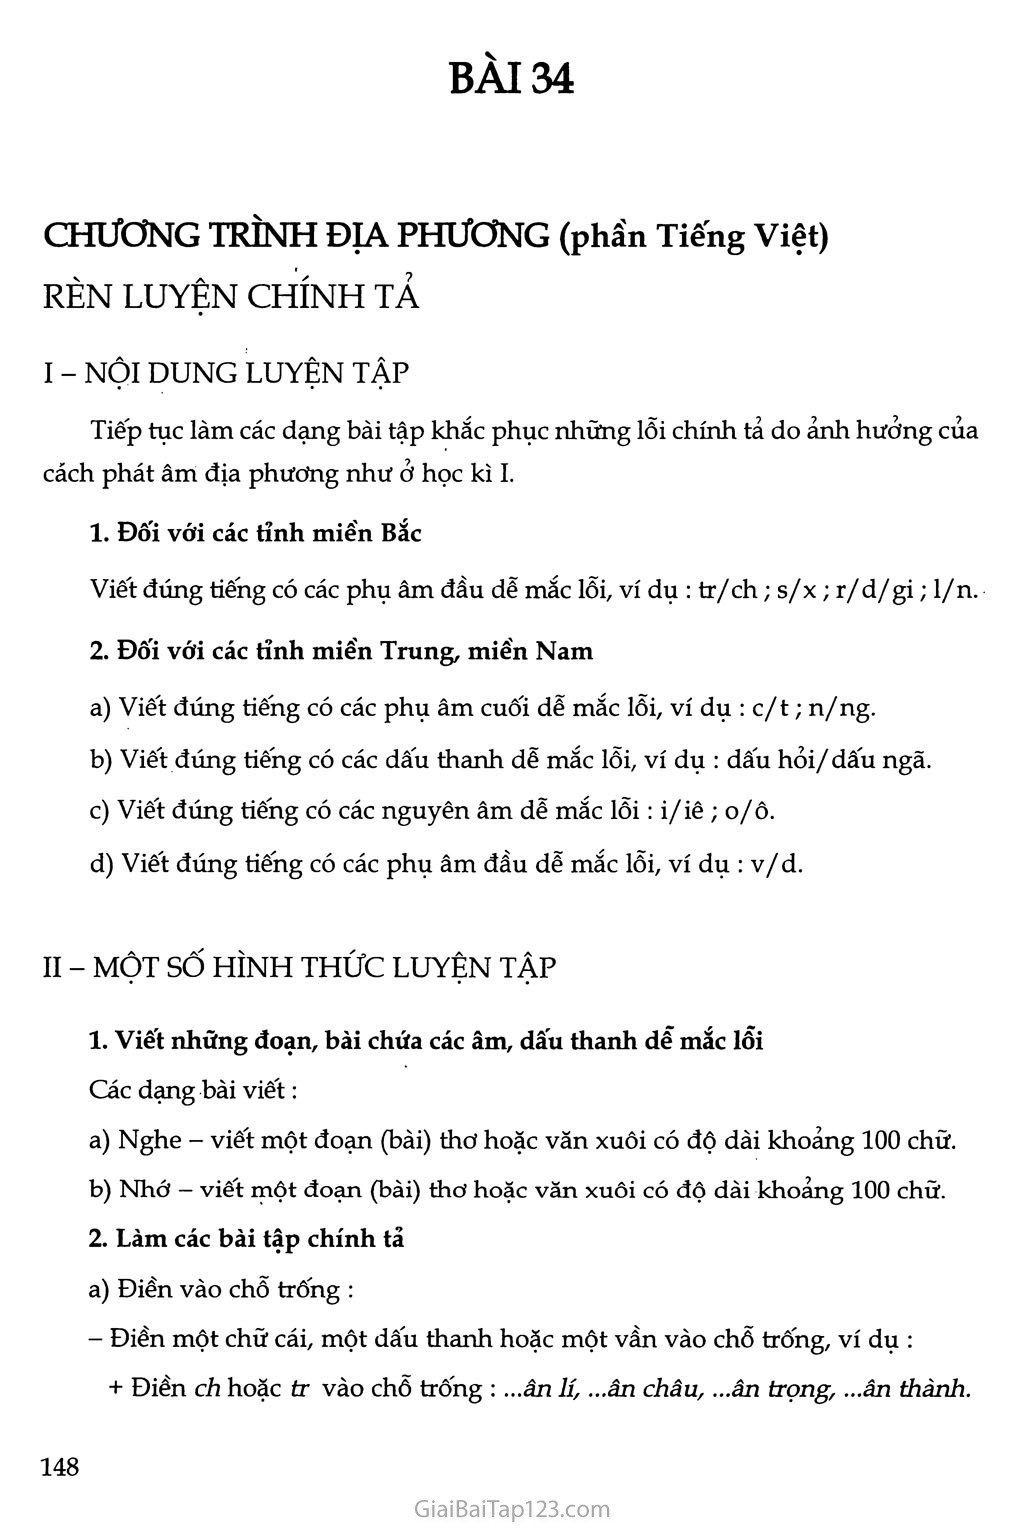 Chương trình địa phương (phần Tiếng Việt) Rèn luyện chính tả trang 1